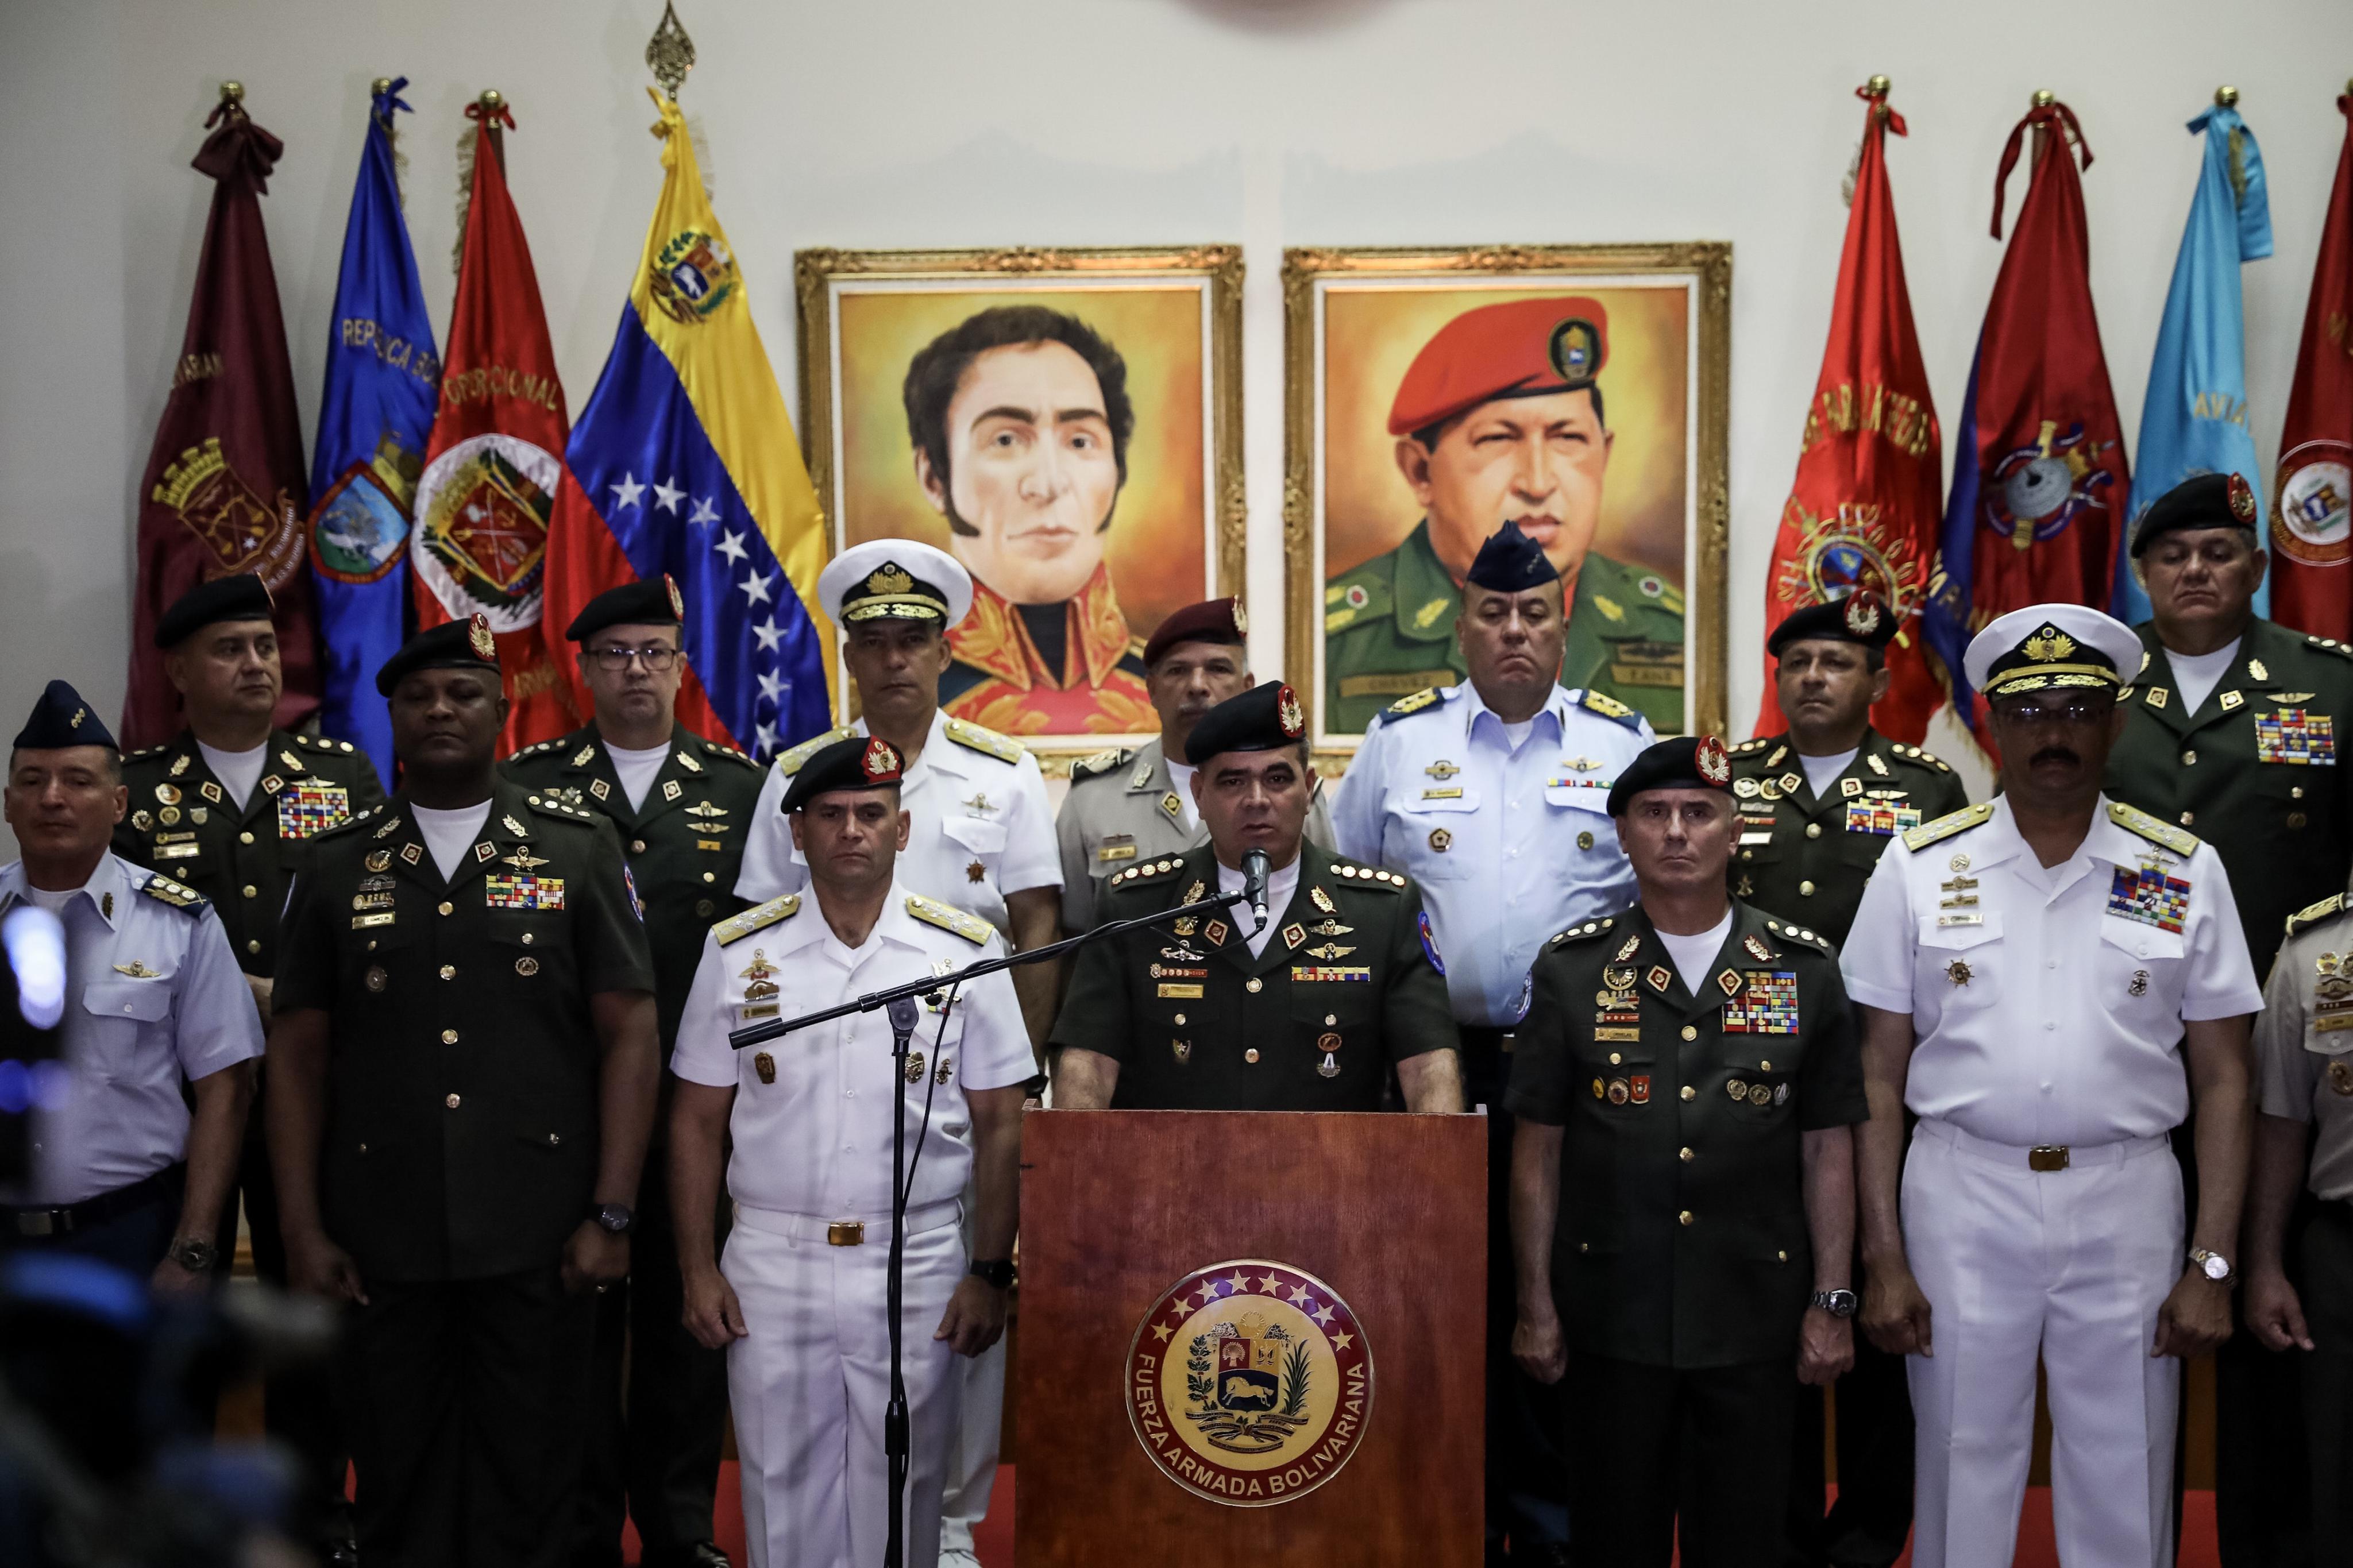 Ejército de Venezuela ratifica apoyo y lealtad a Maduro ante "amenazas" de EU